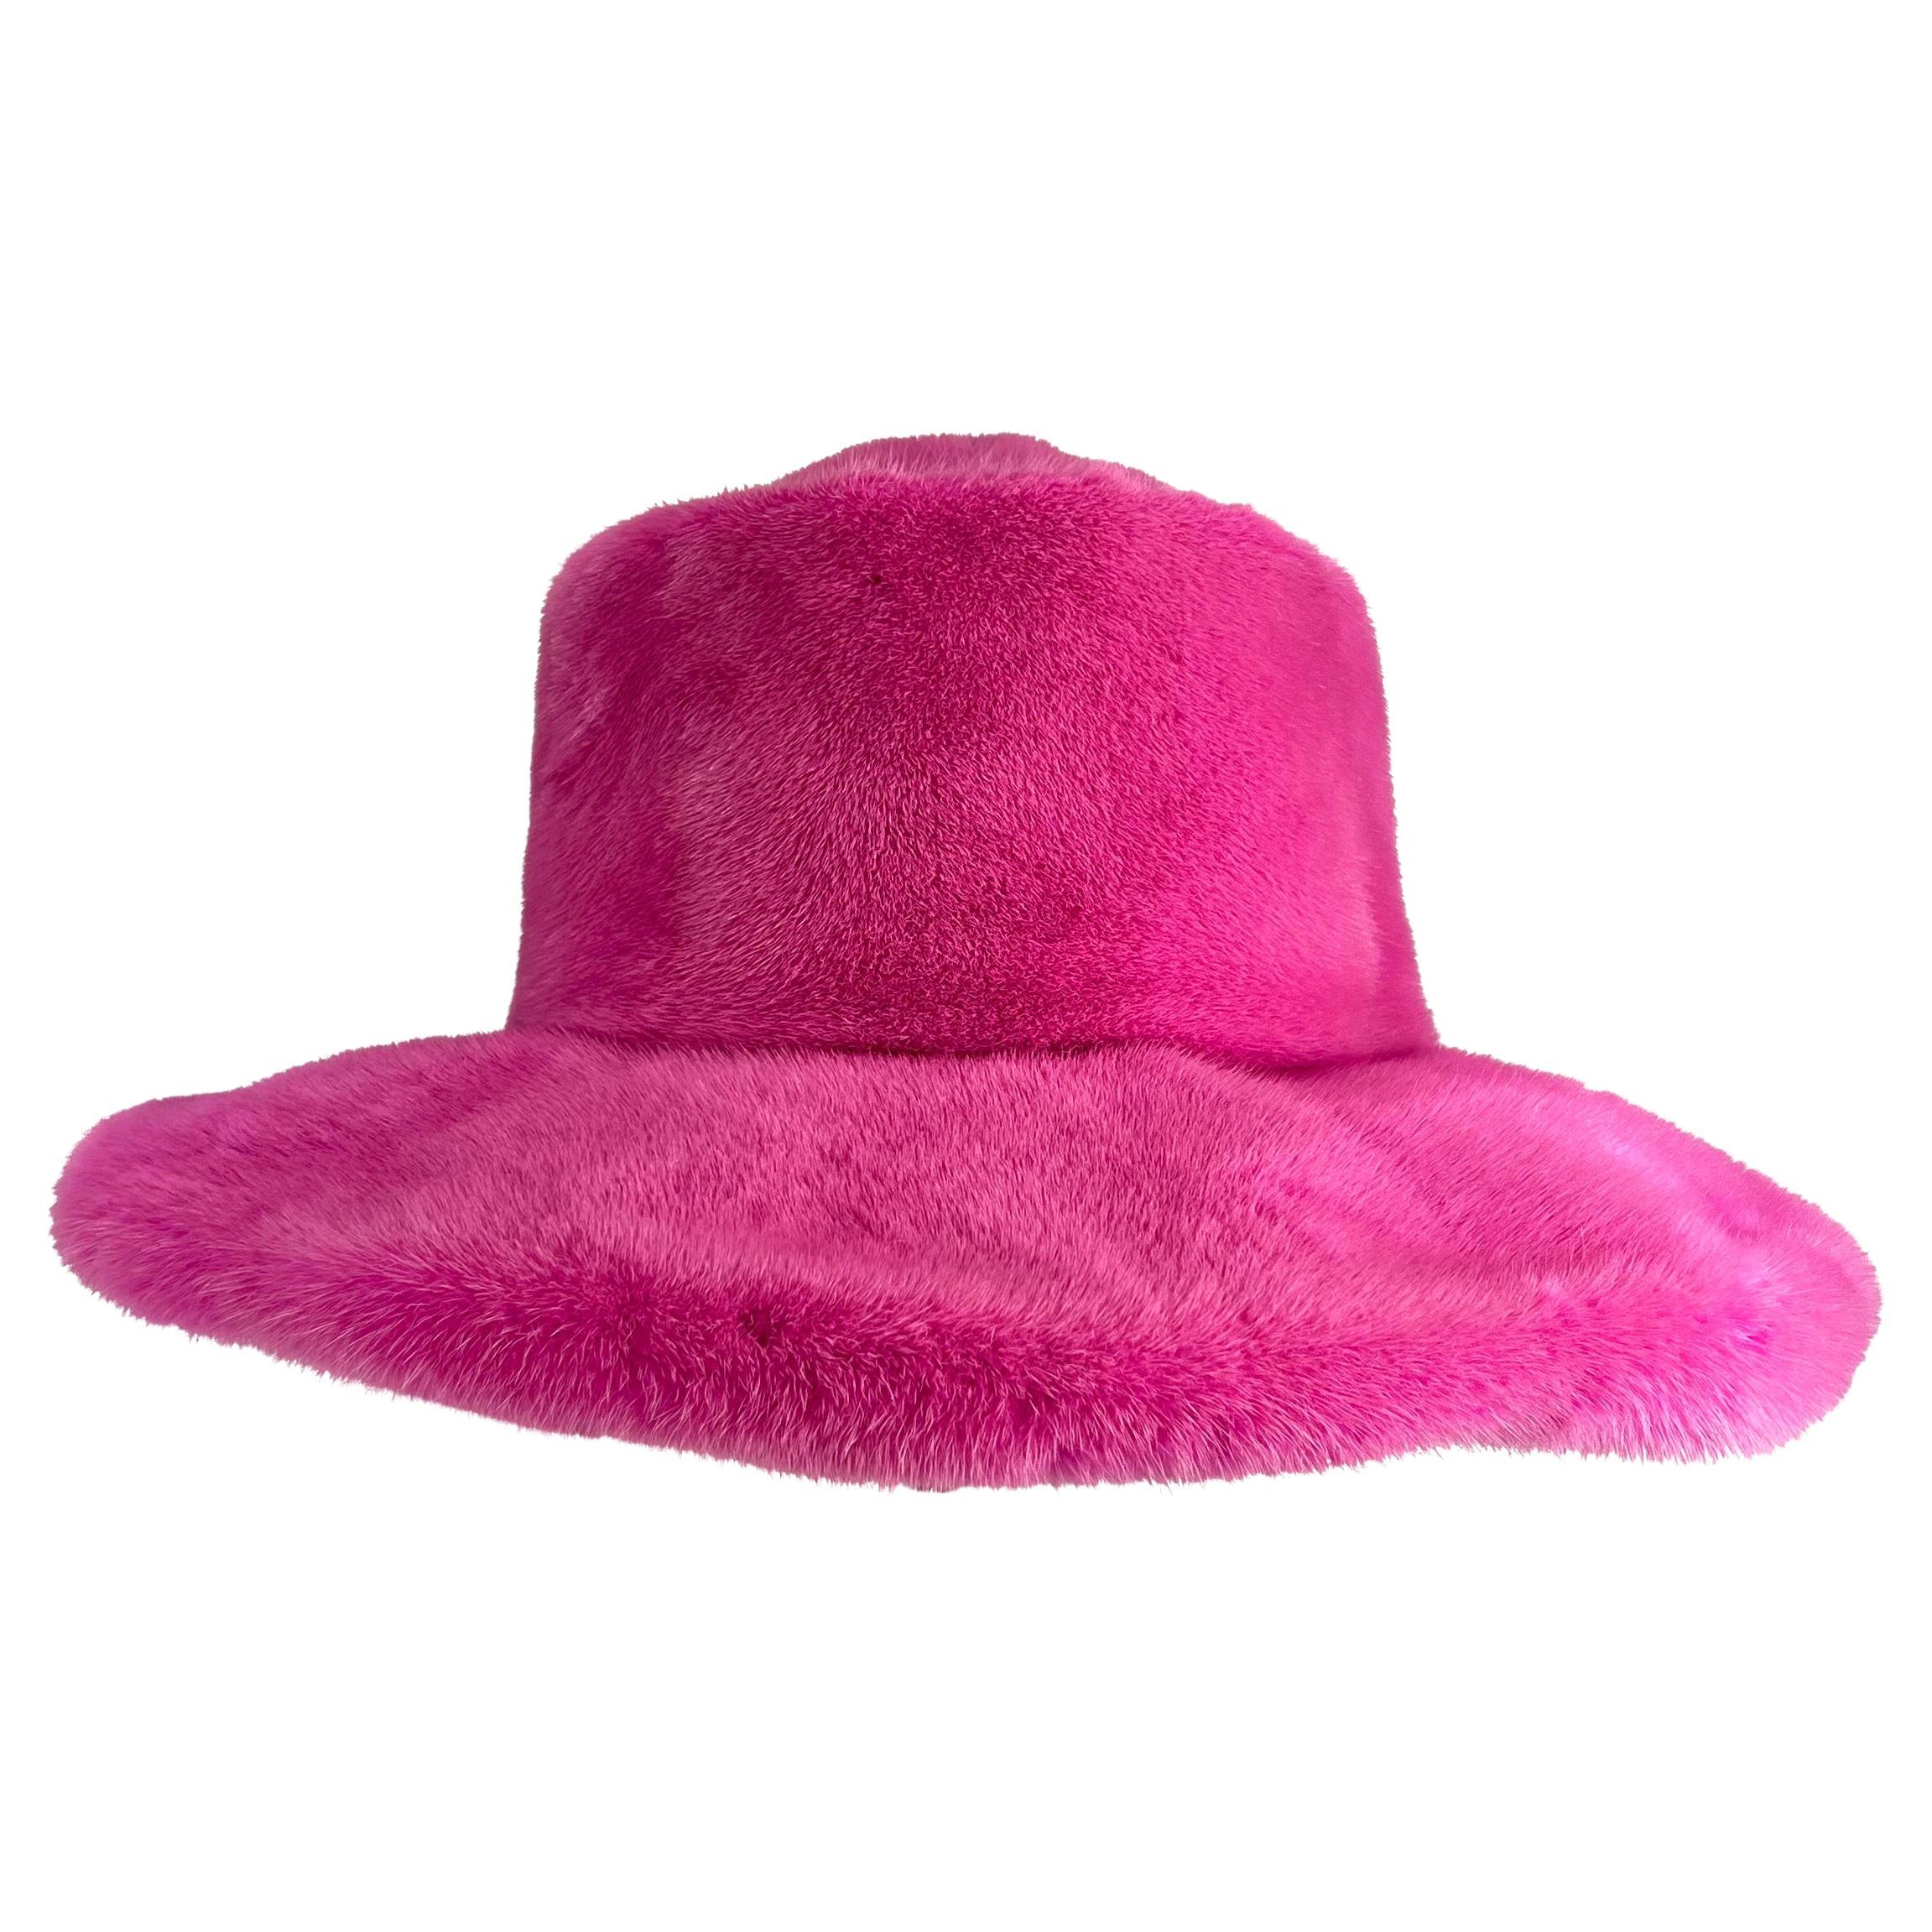 Suzanne Couture Millinery Übergroßer Hut aus rosa Nerzpelz mit Nerzpelzbesatz in Übergröße 